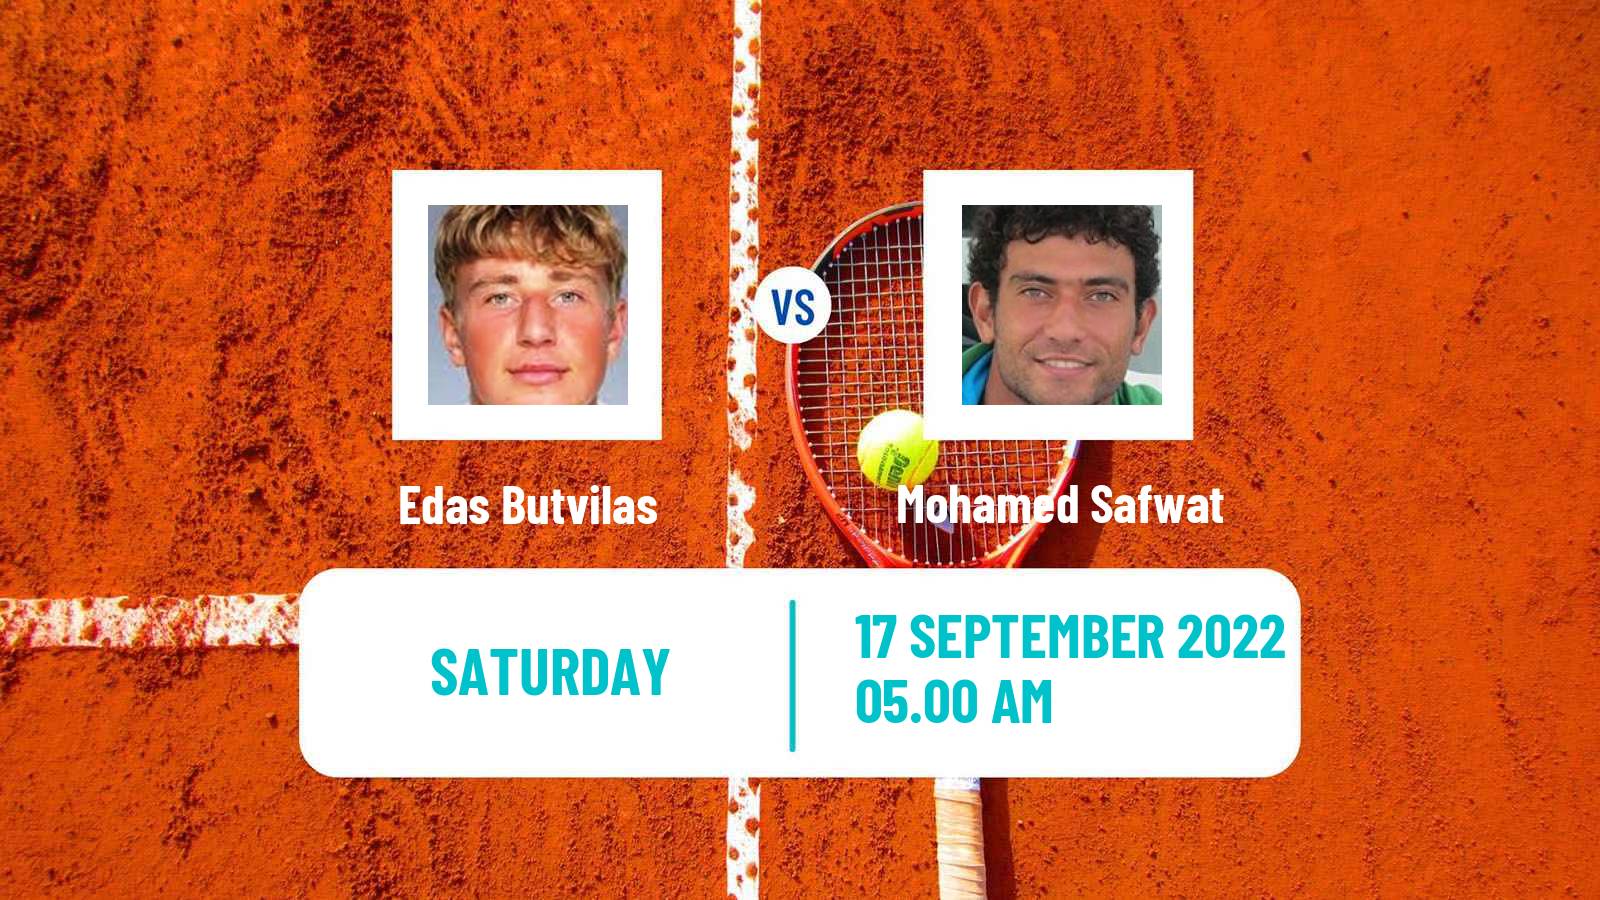 Tennis Davis Cup World Group II Edas Butvilas - Mohamed Safwat